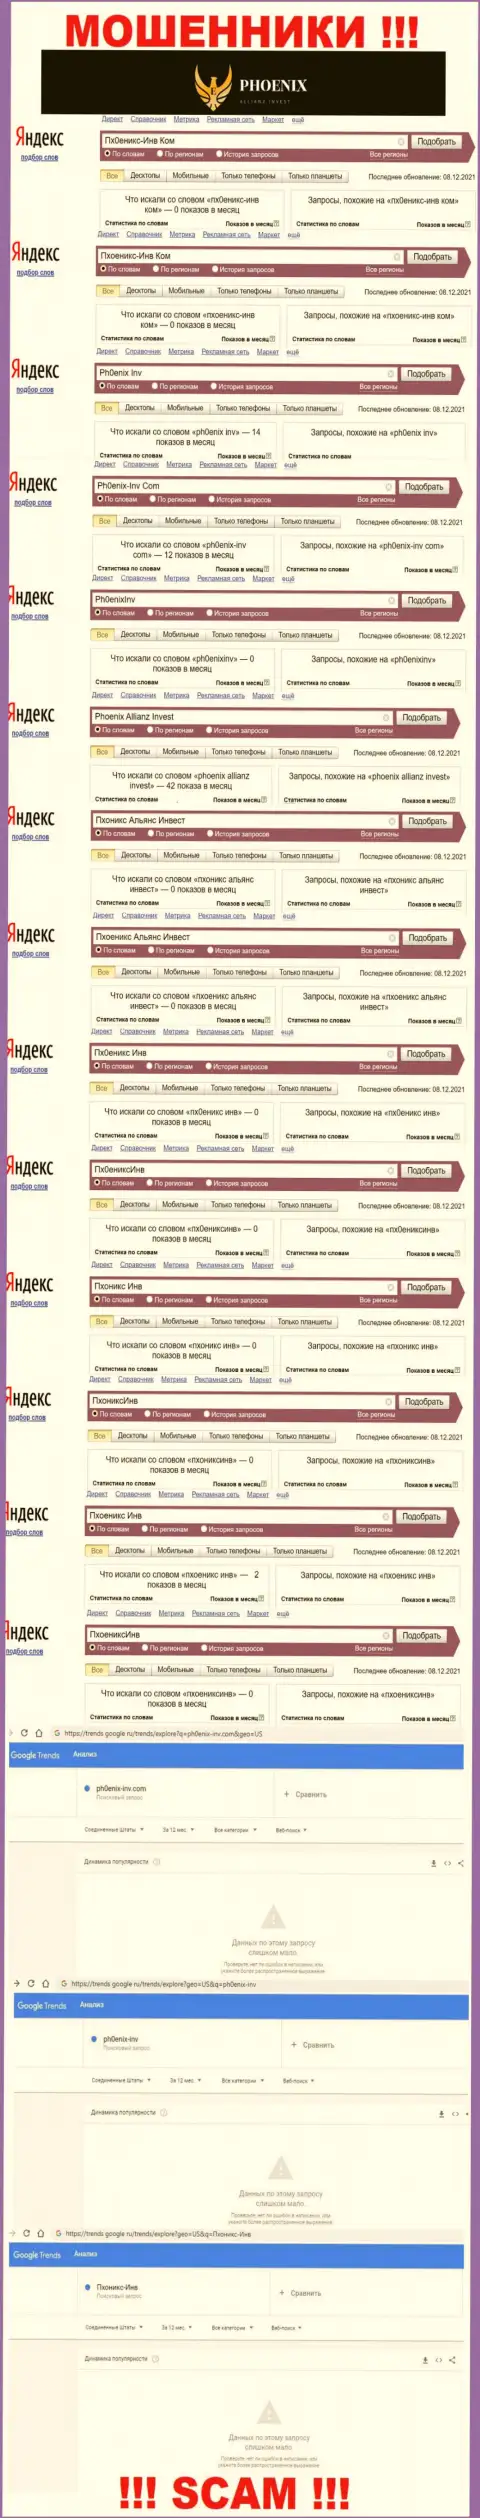 Скриншот статистических сведений online-запросов по противоправно действующей организации Ph0enix-Inv Com